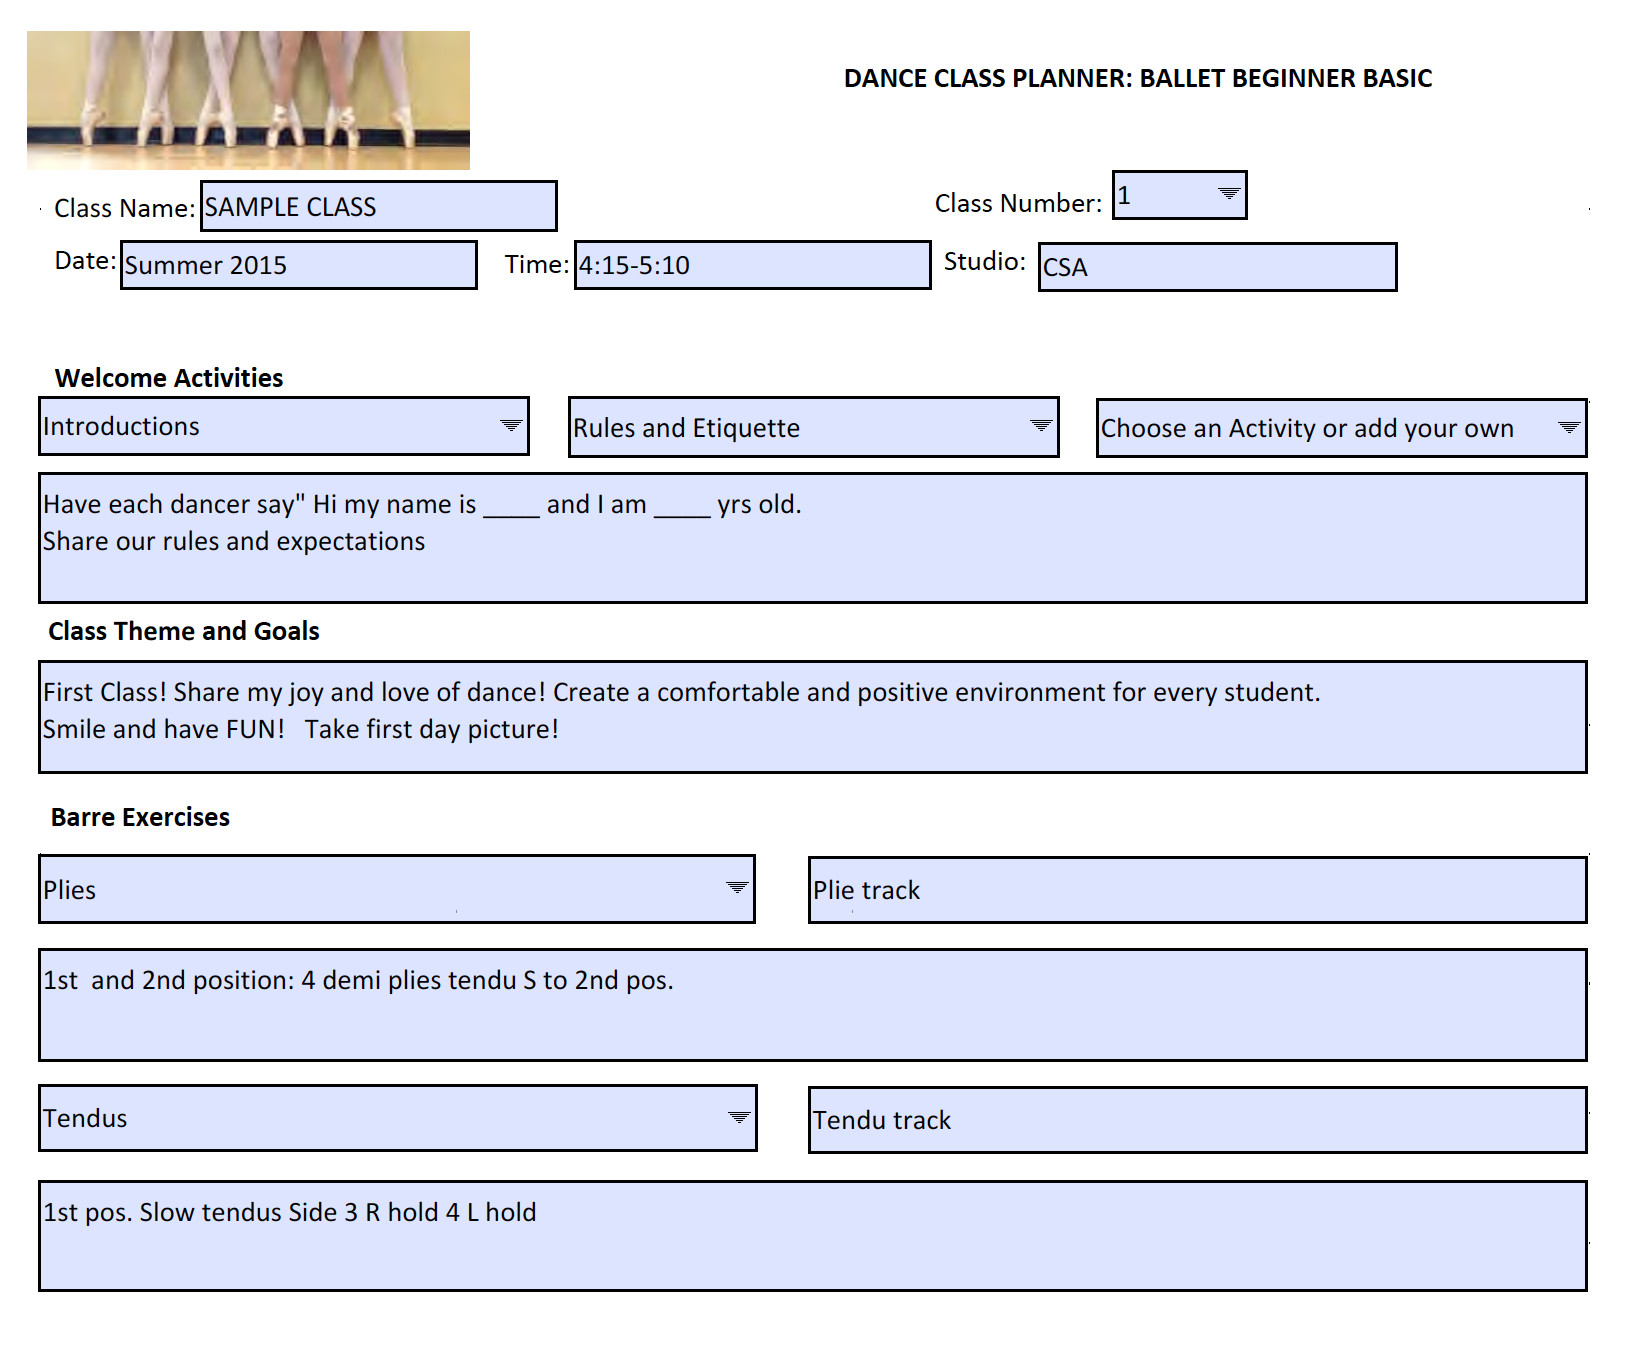 Dance Lesson Plans Dance Class Planner Beginner Ballet Basic Editable